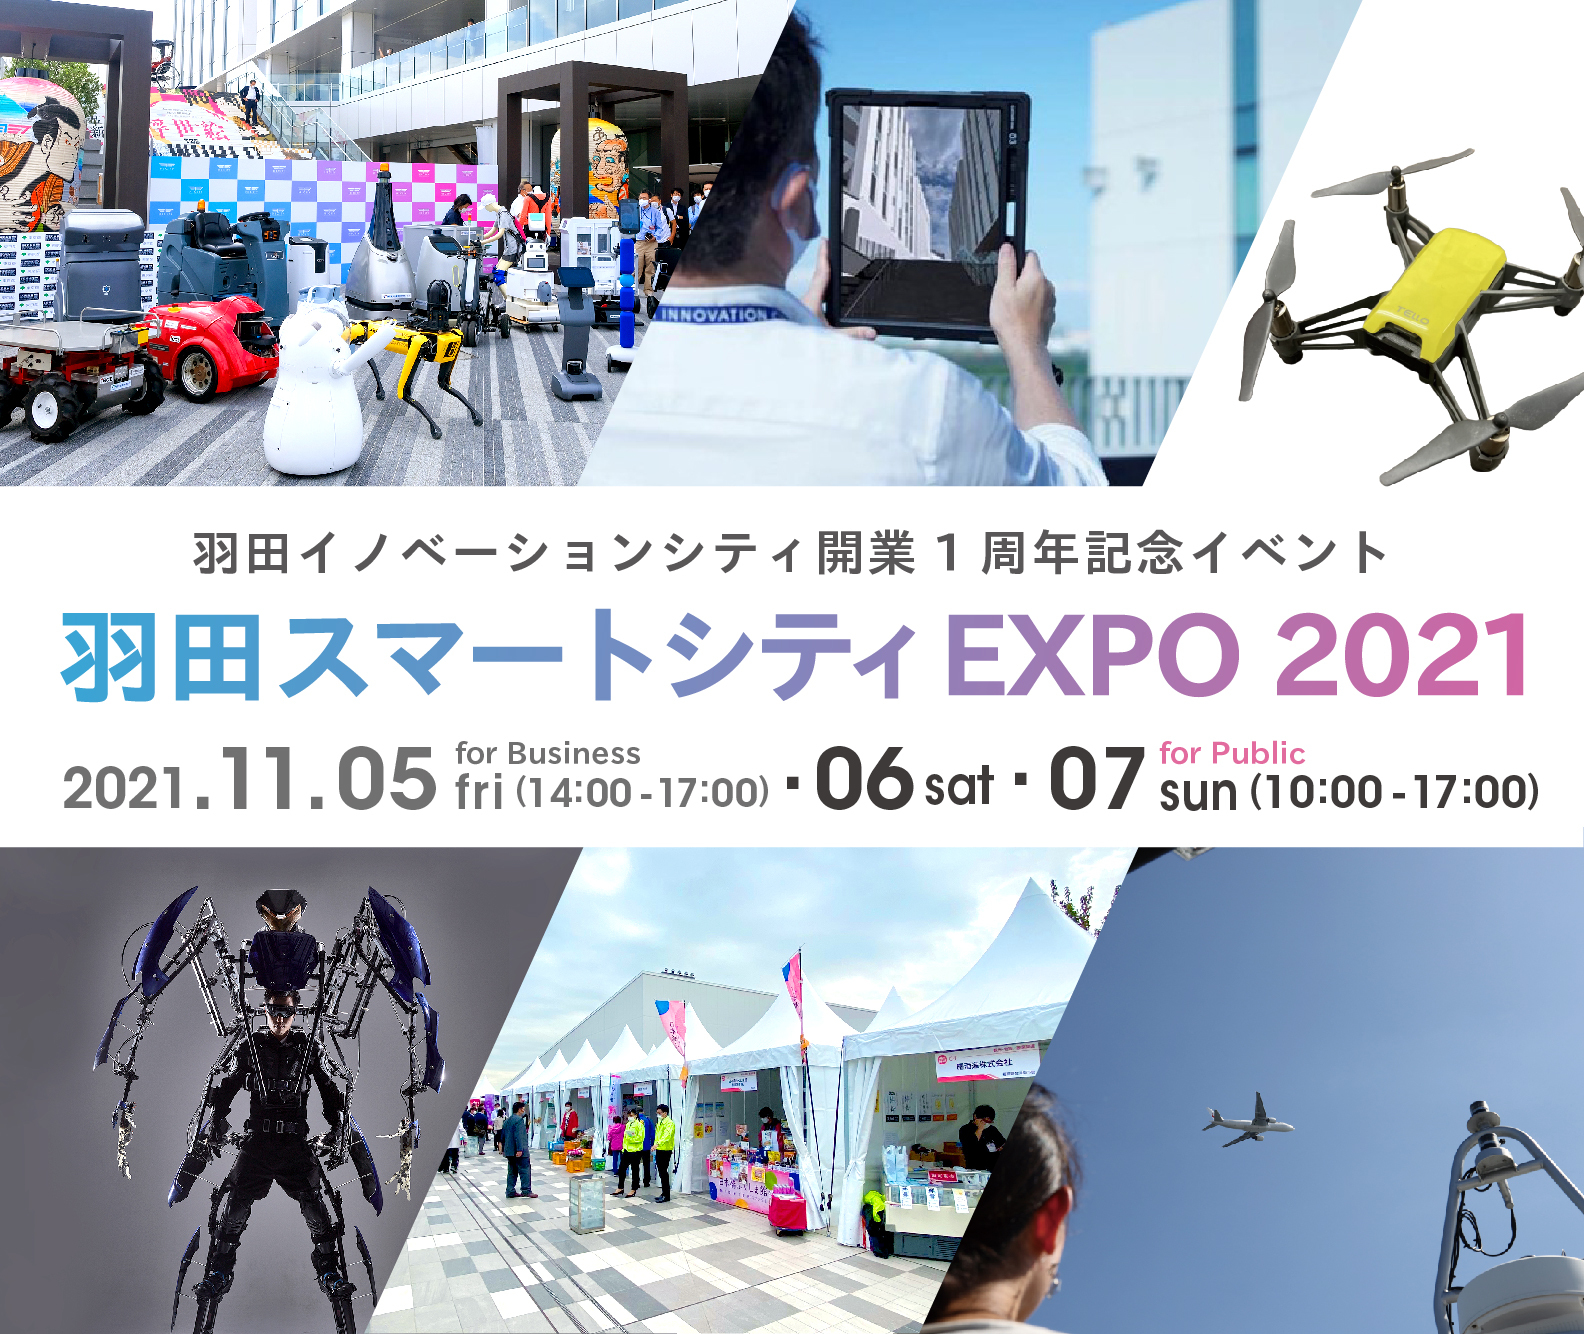 2021.11.05-07  「羽田スマートシティEXPO 2021」開催！PiOPARKイベントもあります！